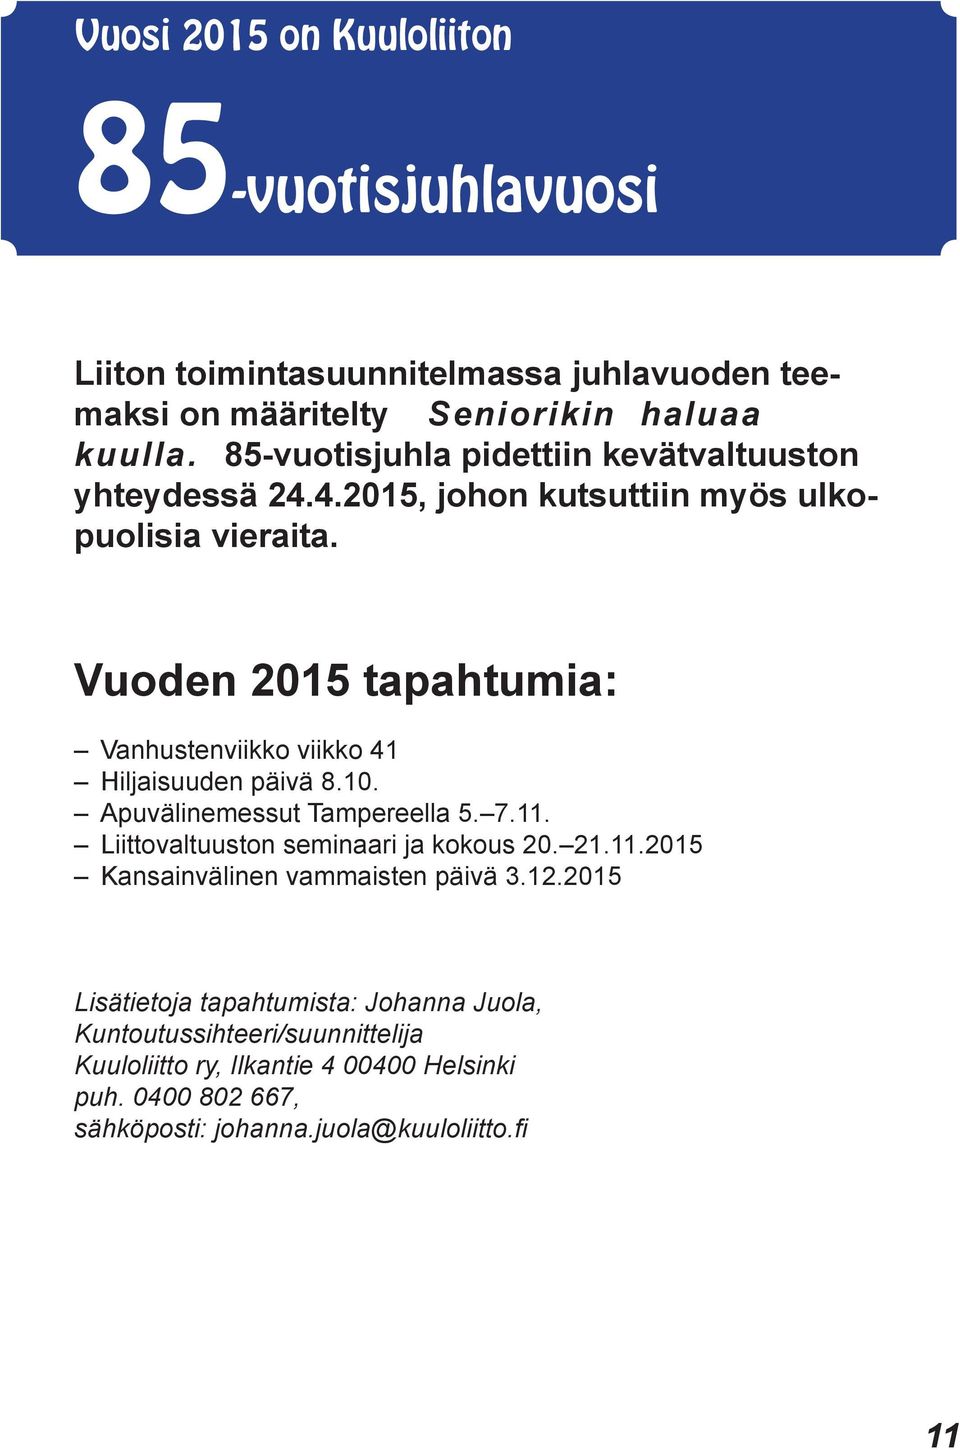 Vuoden 2015 tapahtumia: Vanhustenviikko viikko 41 Hiljaisuuden päivä 8.10. Apuvälinemessut Tampereella 5. 7.11. Liittovaltuuston seminaari ja kokous 20. 21.